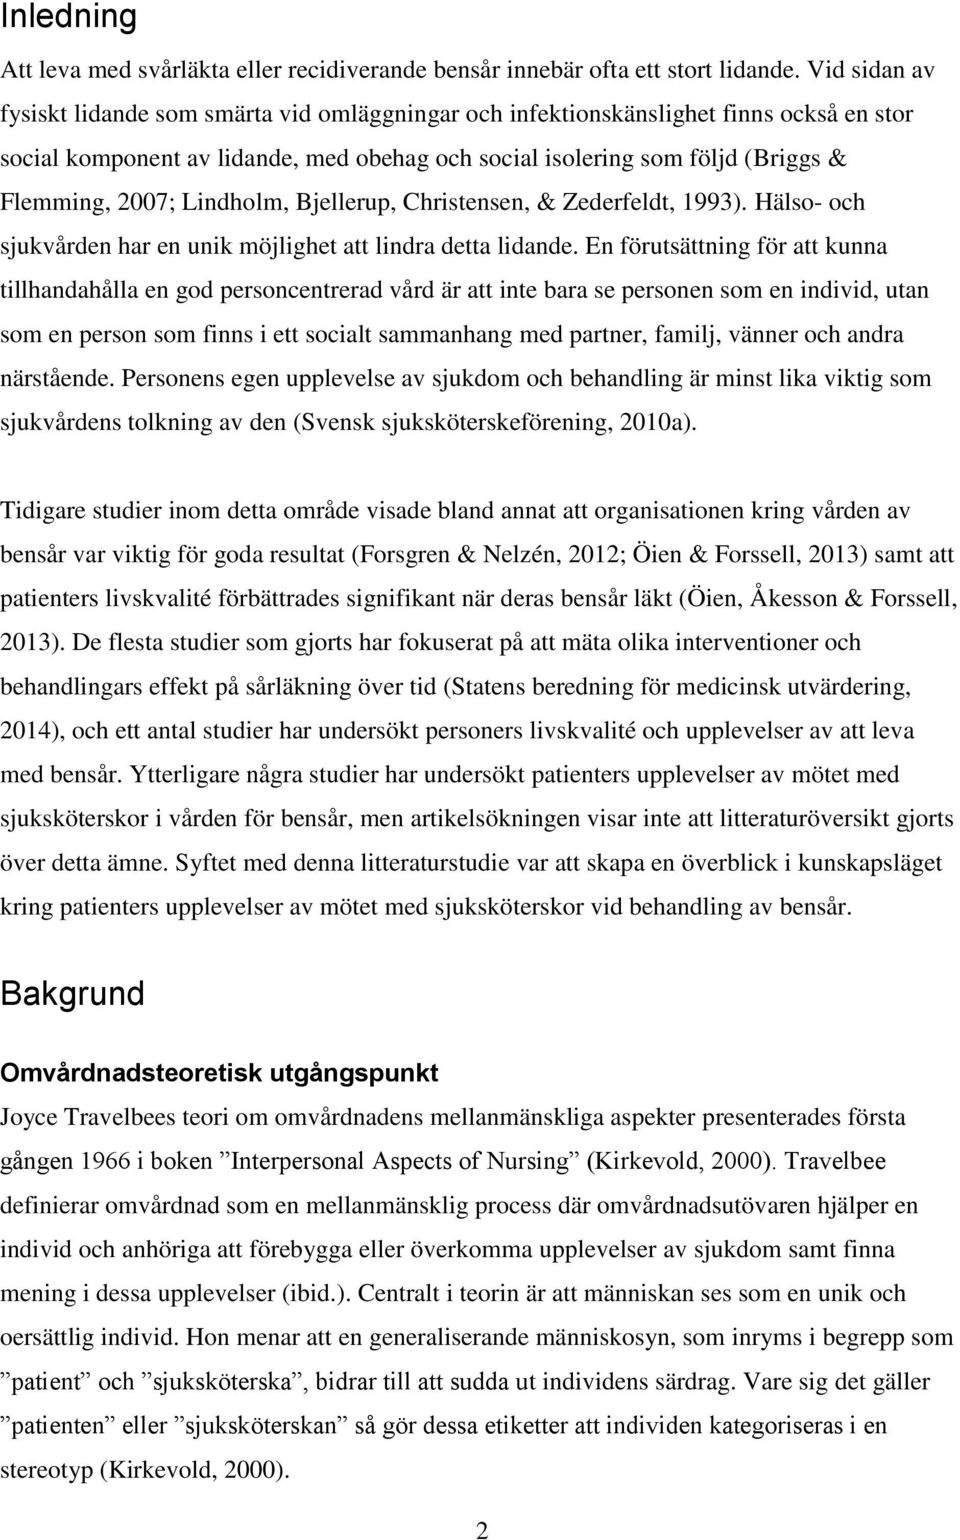 Lindholm, Bjellerup, Christensen, & Zederfeldt, 1993). Hälso- och sjukvården har en unik möjlighet att lindra detta lidande.